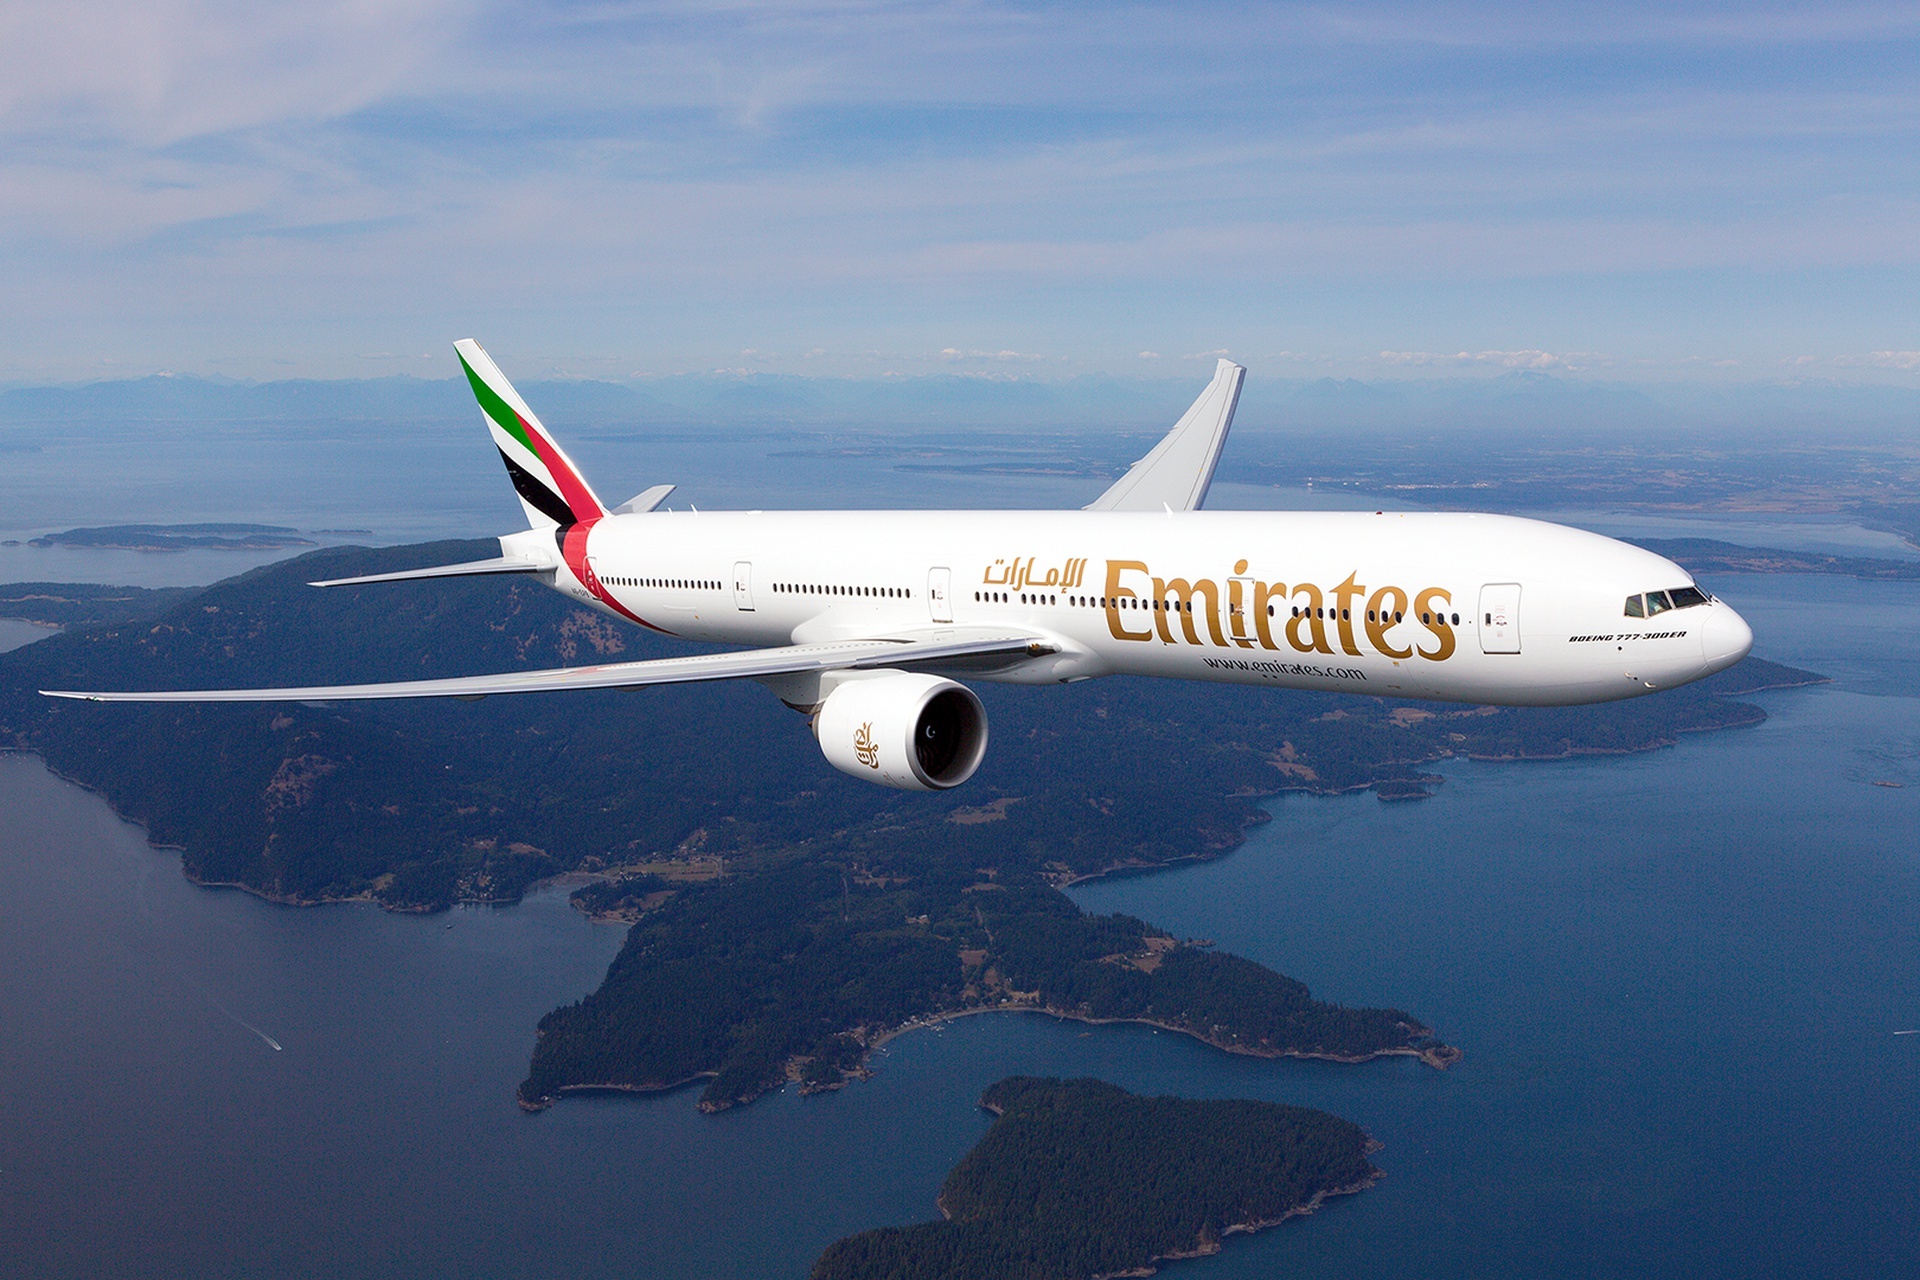 Κορωνοϊός: Η Emirates ξεκίνησε εξετάσεις αίματος σε επιβάτες πριν από πτήσεις